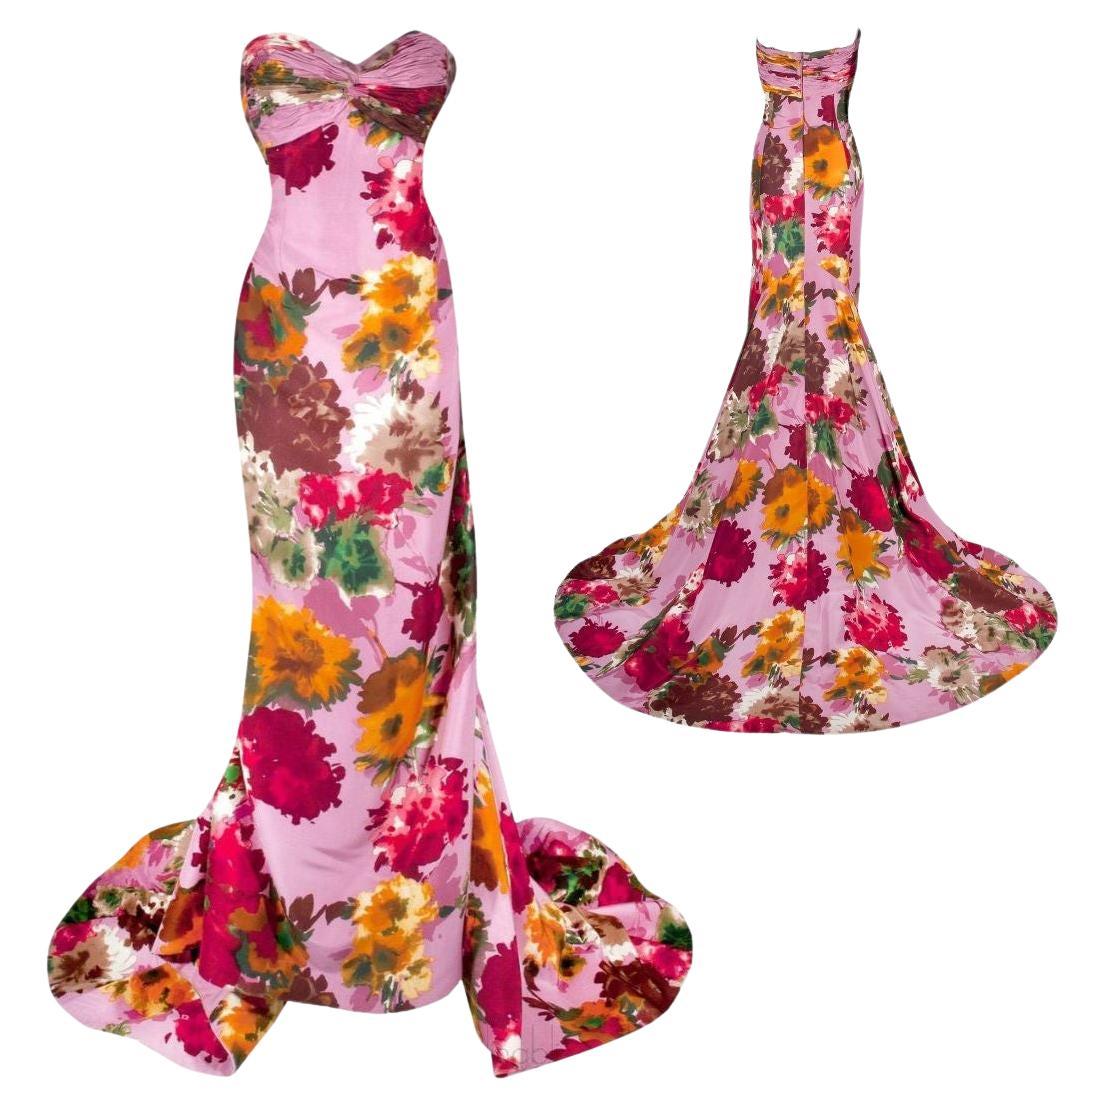 Oscar de la Renta Pink Garden Party Floral Evening Gown S/S 2008 Size 8 For Sale